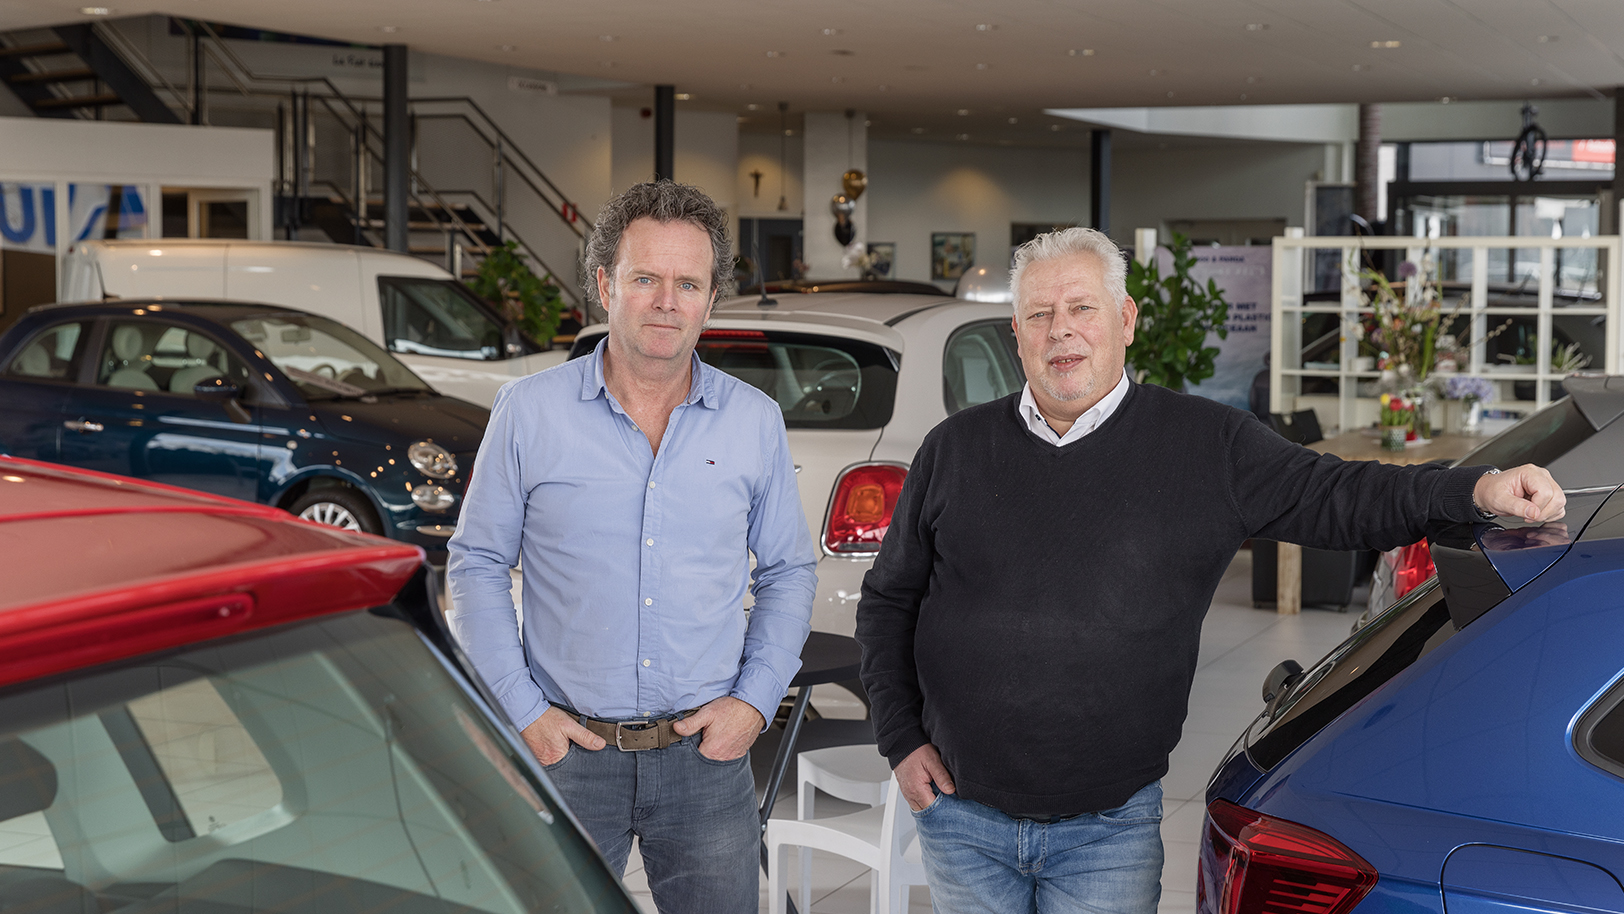 Autobedrijf P.J. Peeters in het Brabantse Gemert was een bekende Fiat-dealer in de regio, maar is inmiddels een universeel autobedrijf. De neven Piet Peeters (55) en Piet Peeters (58) vertellen hoe zij hun bedrijf door  

deze en andere veranderingen heen loodsen.  